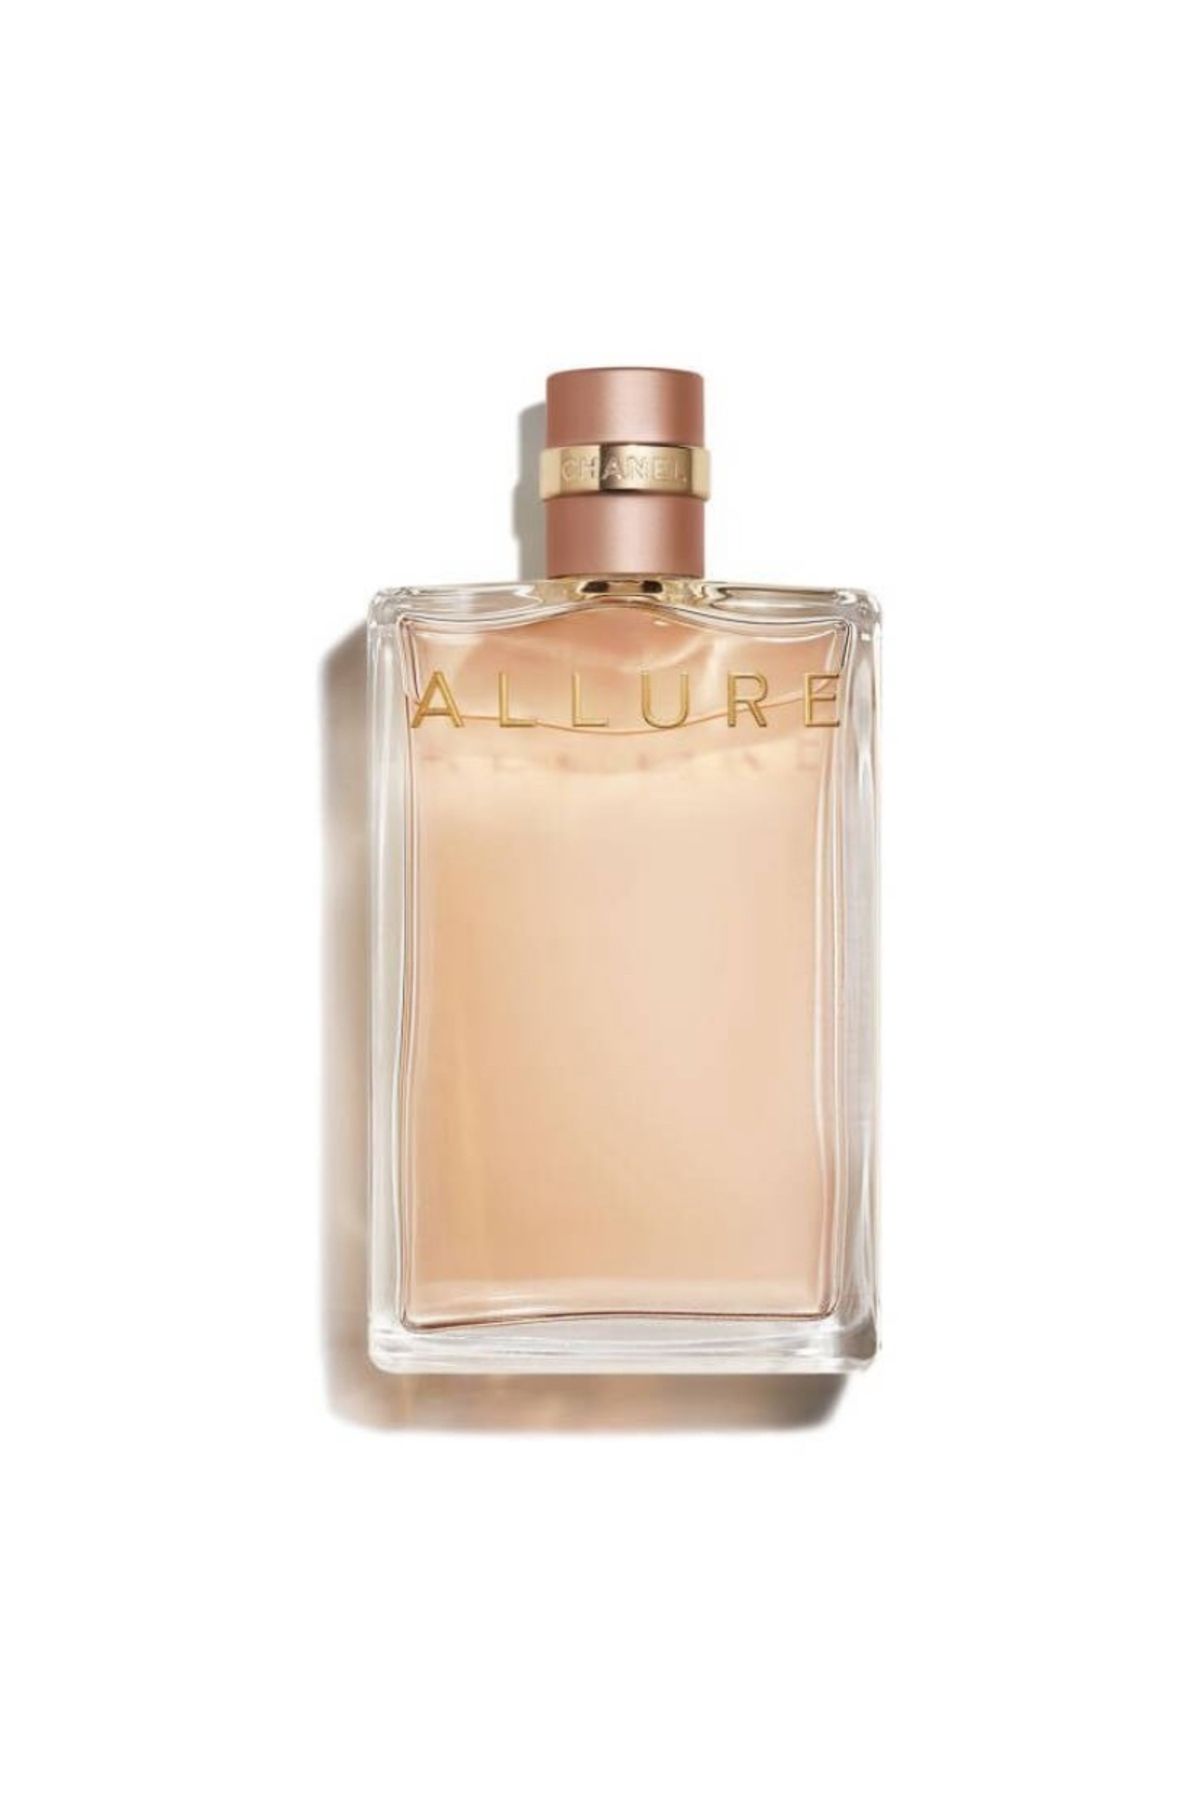 Chanel Allure Eau De Parfum Kadın Parfümü Edp 50ml Pinkestcosmetics